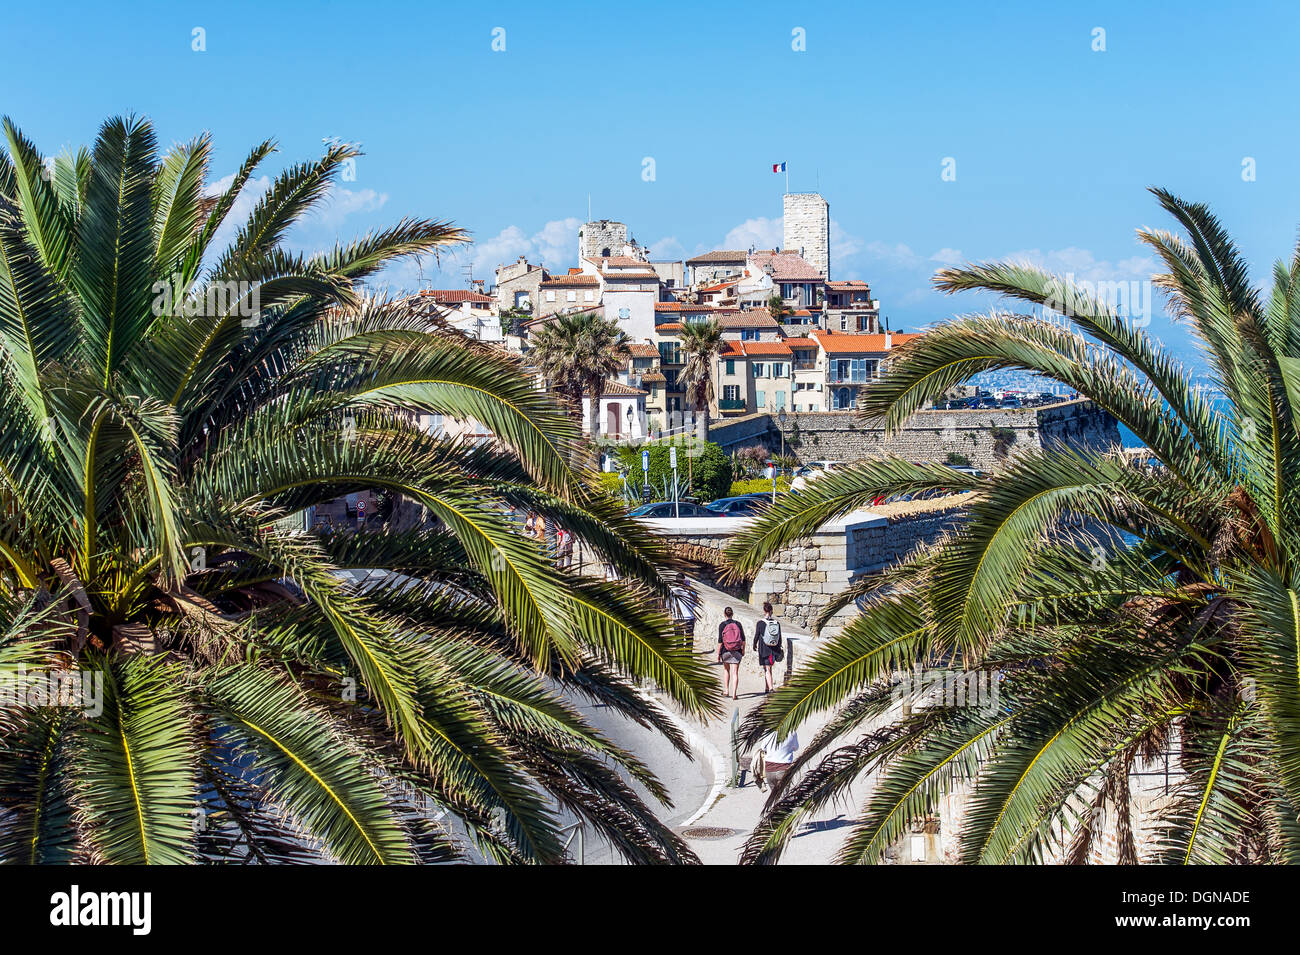 Europe, France, Alpes-Maritimes, Antibes. Palmiers dans une vieille ville. Banque D'Images